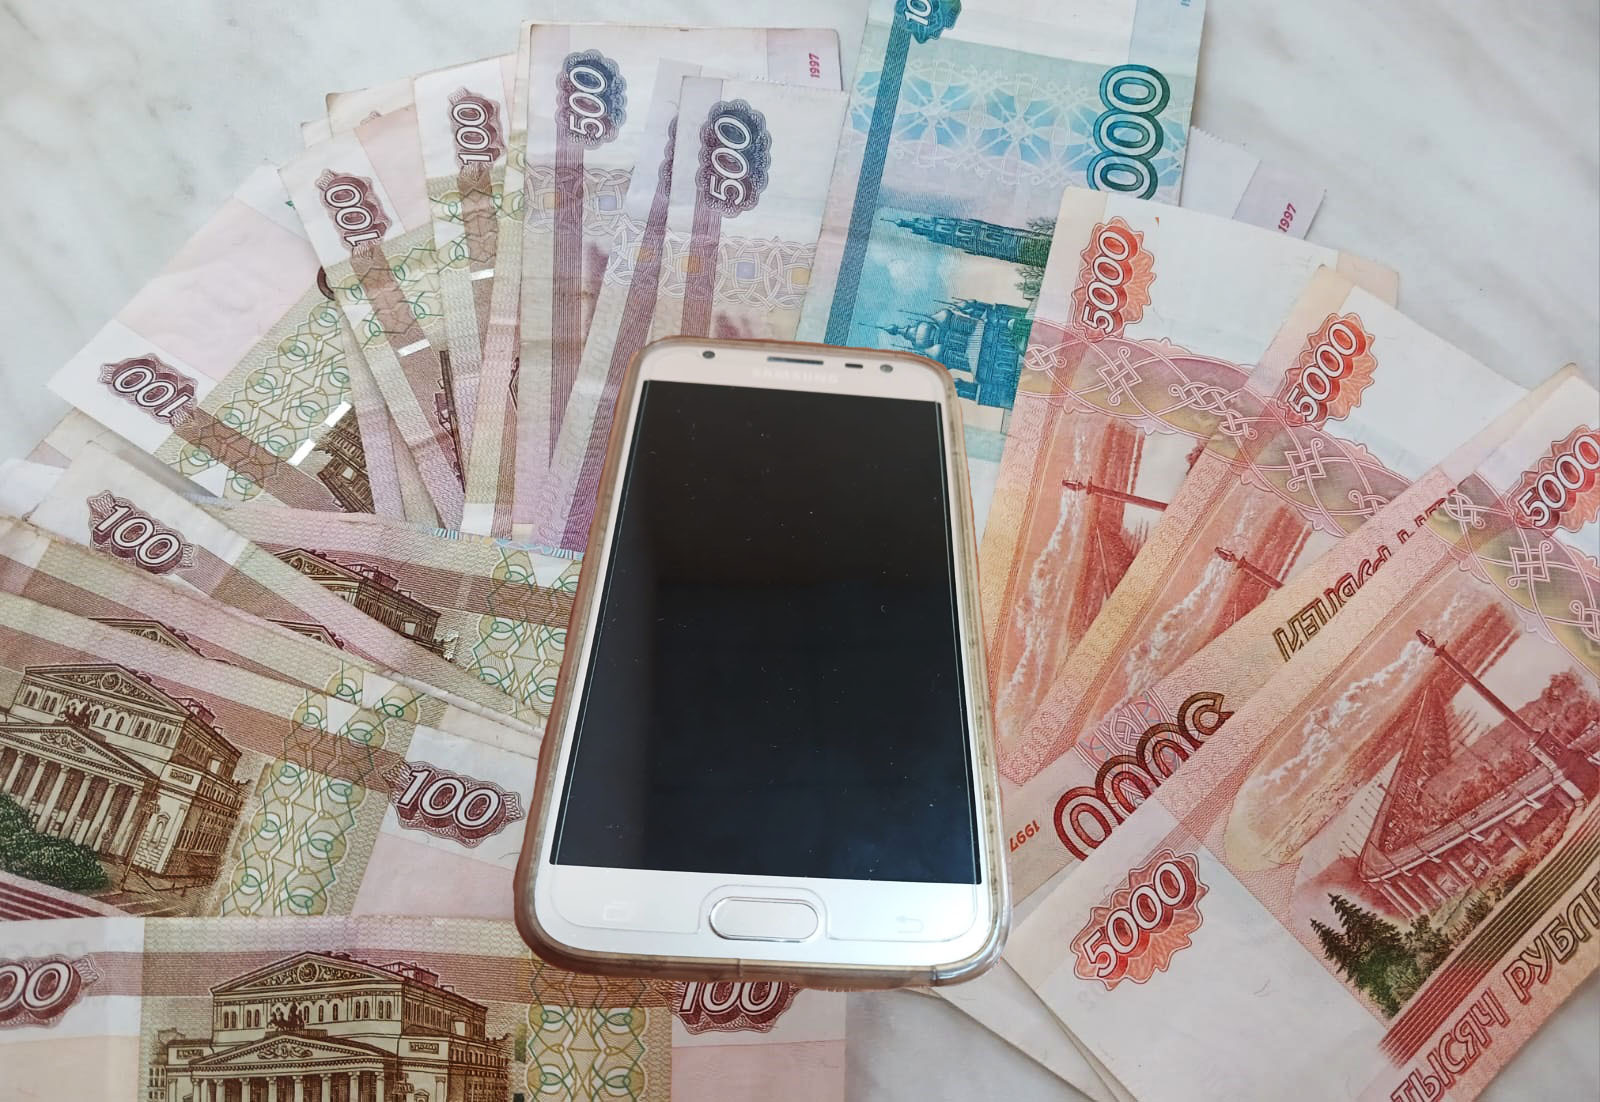 Финансовый эксперт из Башкирии рассказала 8 признаков, как распознать мошенника